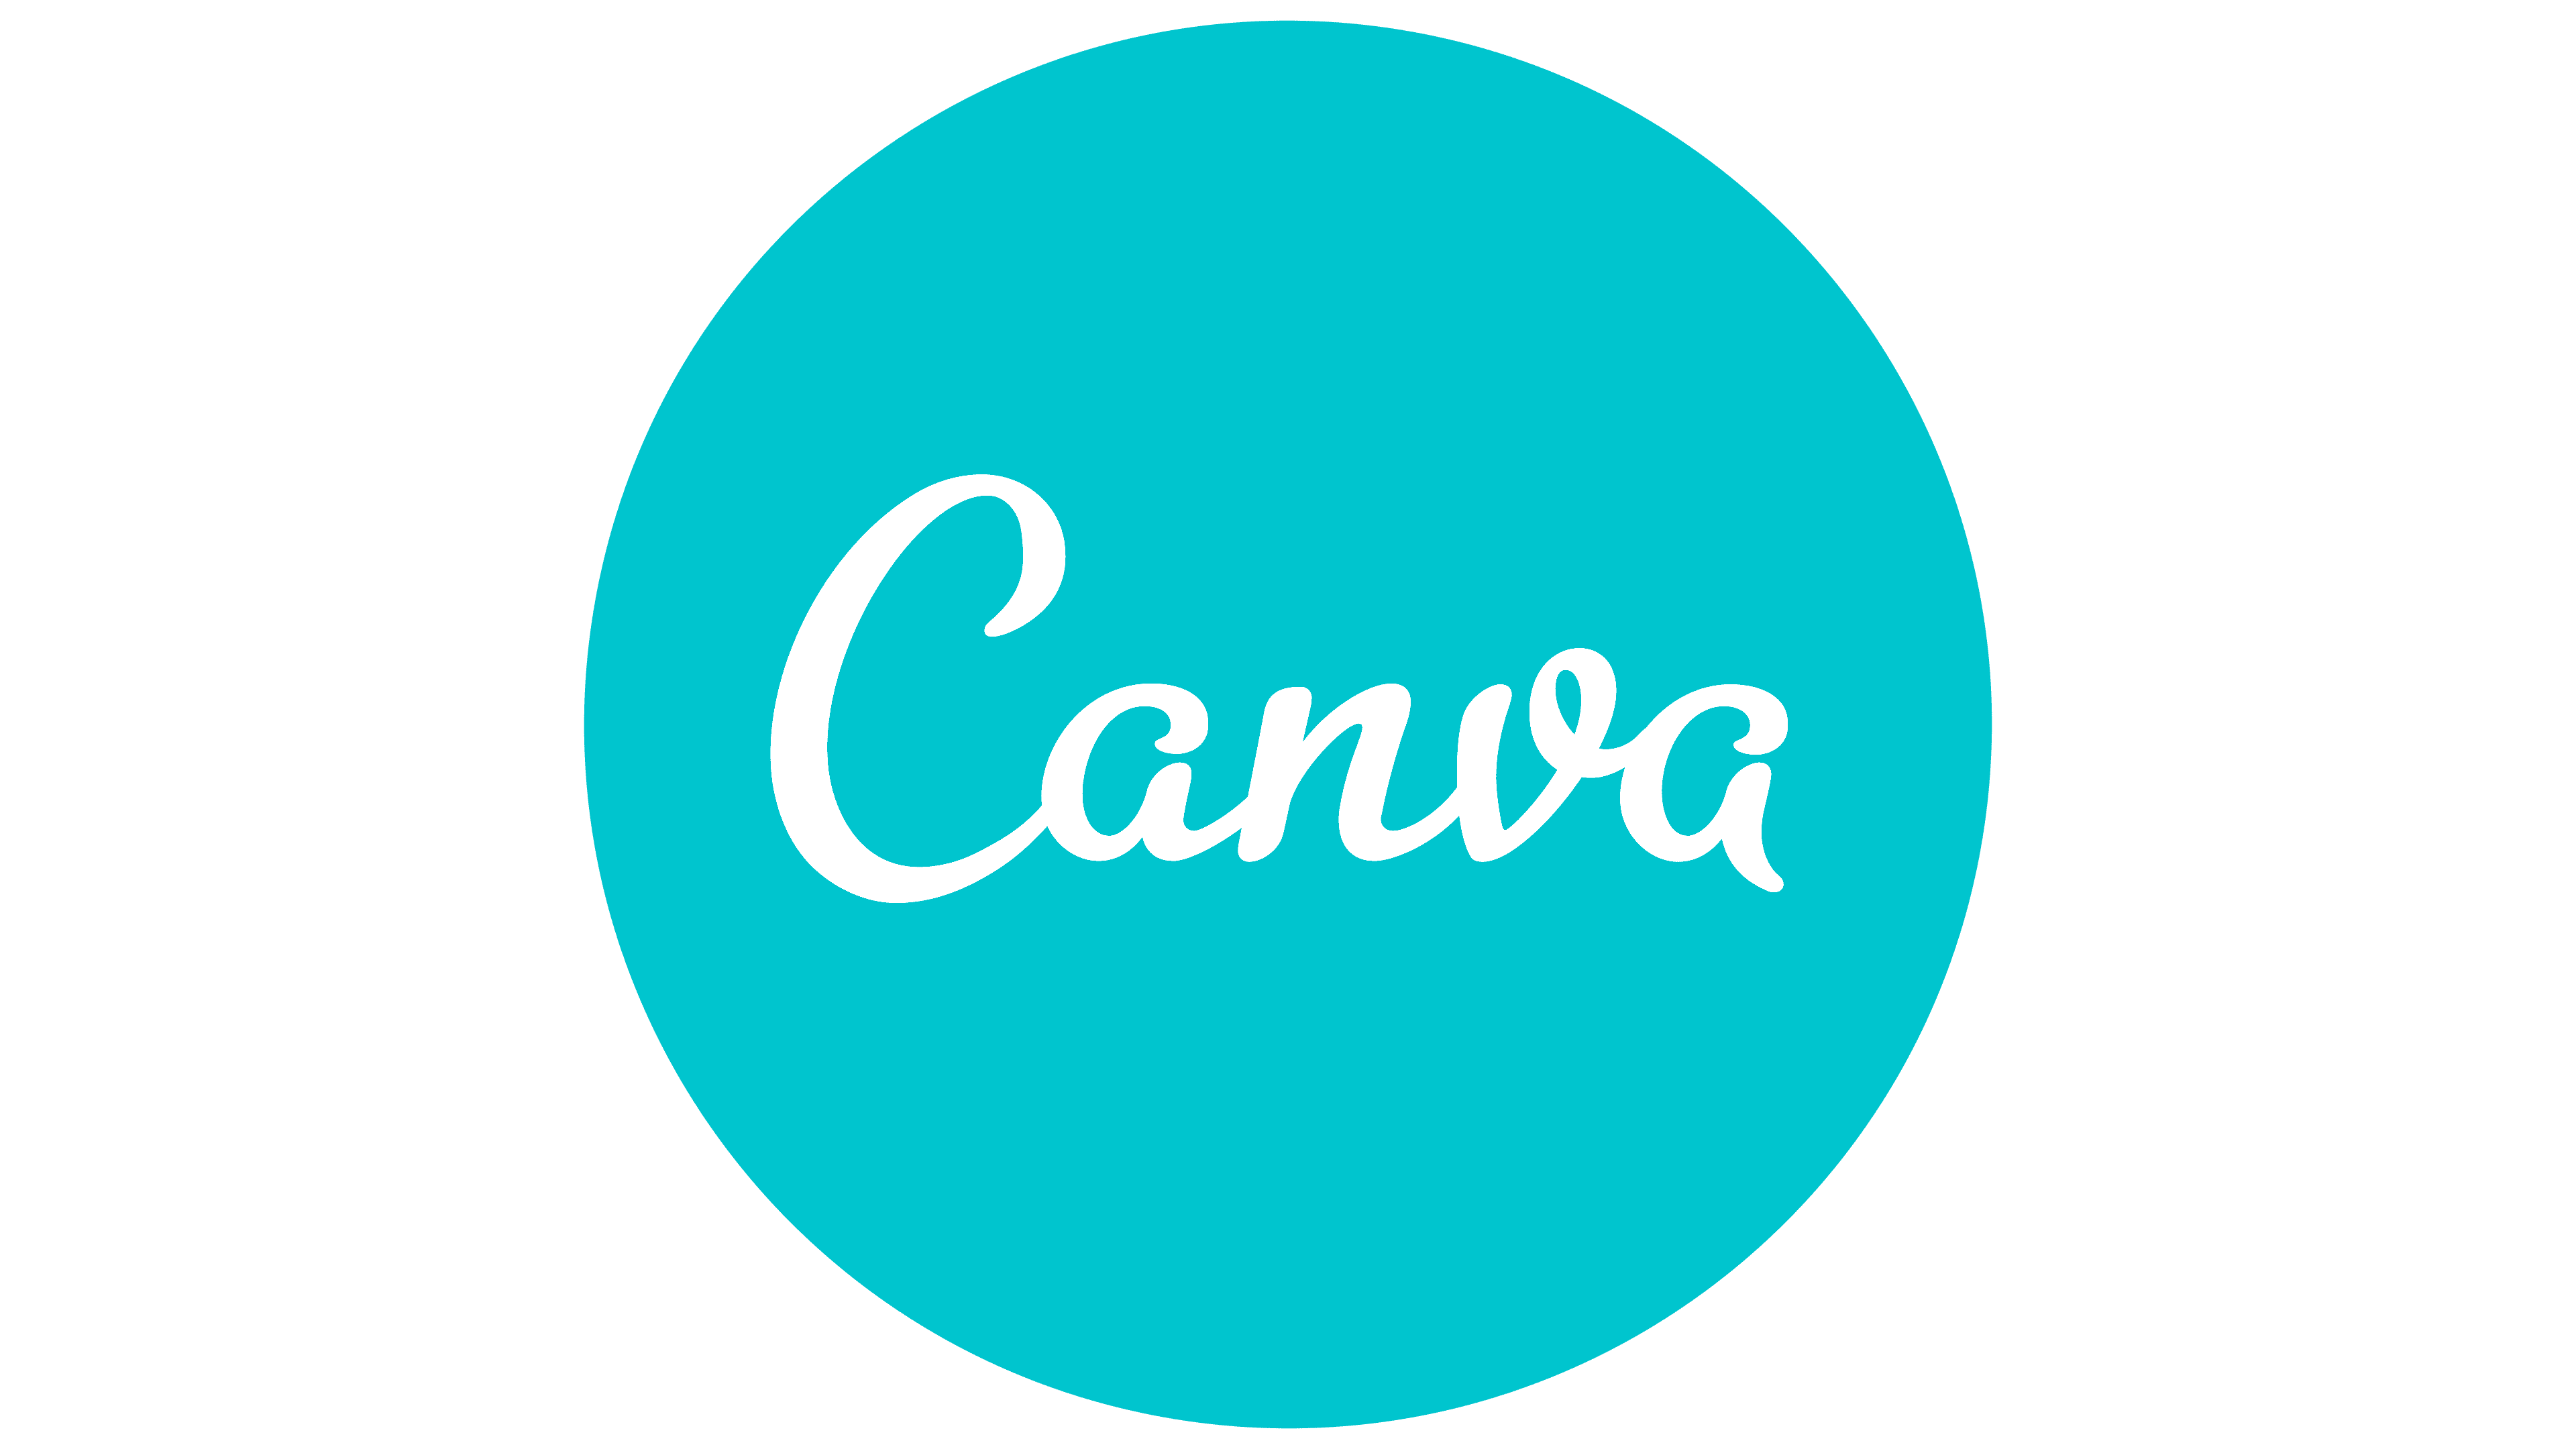 Met dit Canva logo op de OCMN website benadrukken wij ons enthousiasme over het Canva design platform